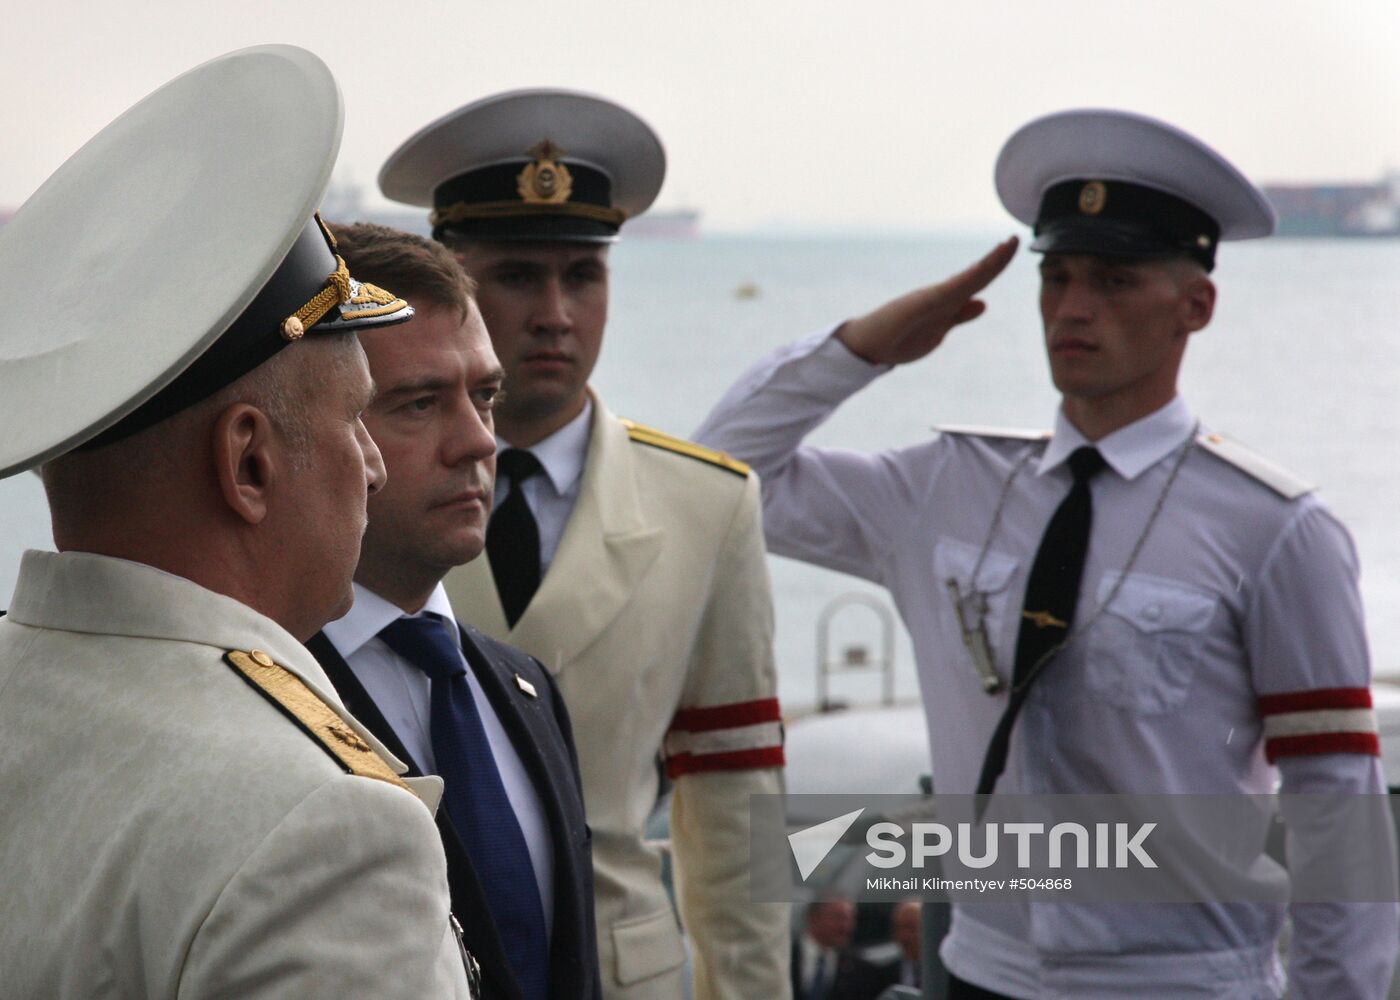 Dmitry Medvedev visiting the Varyag cruiser